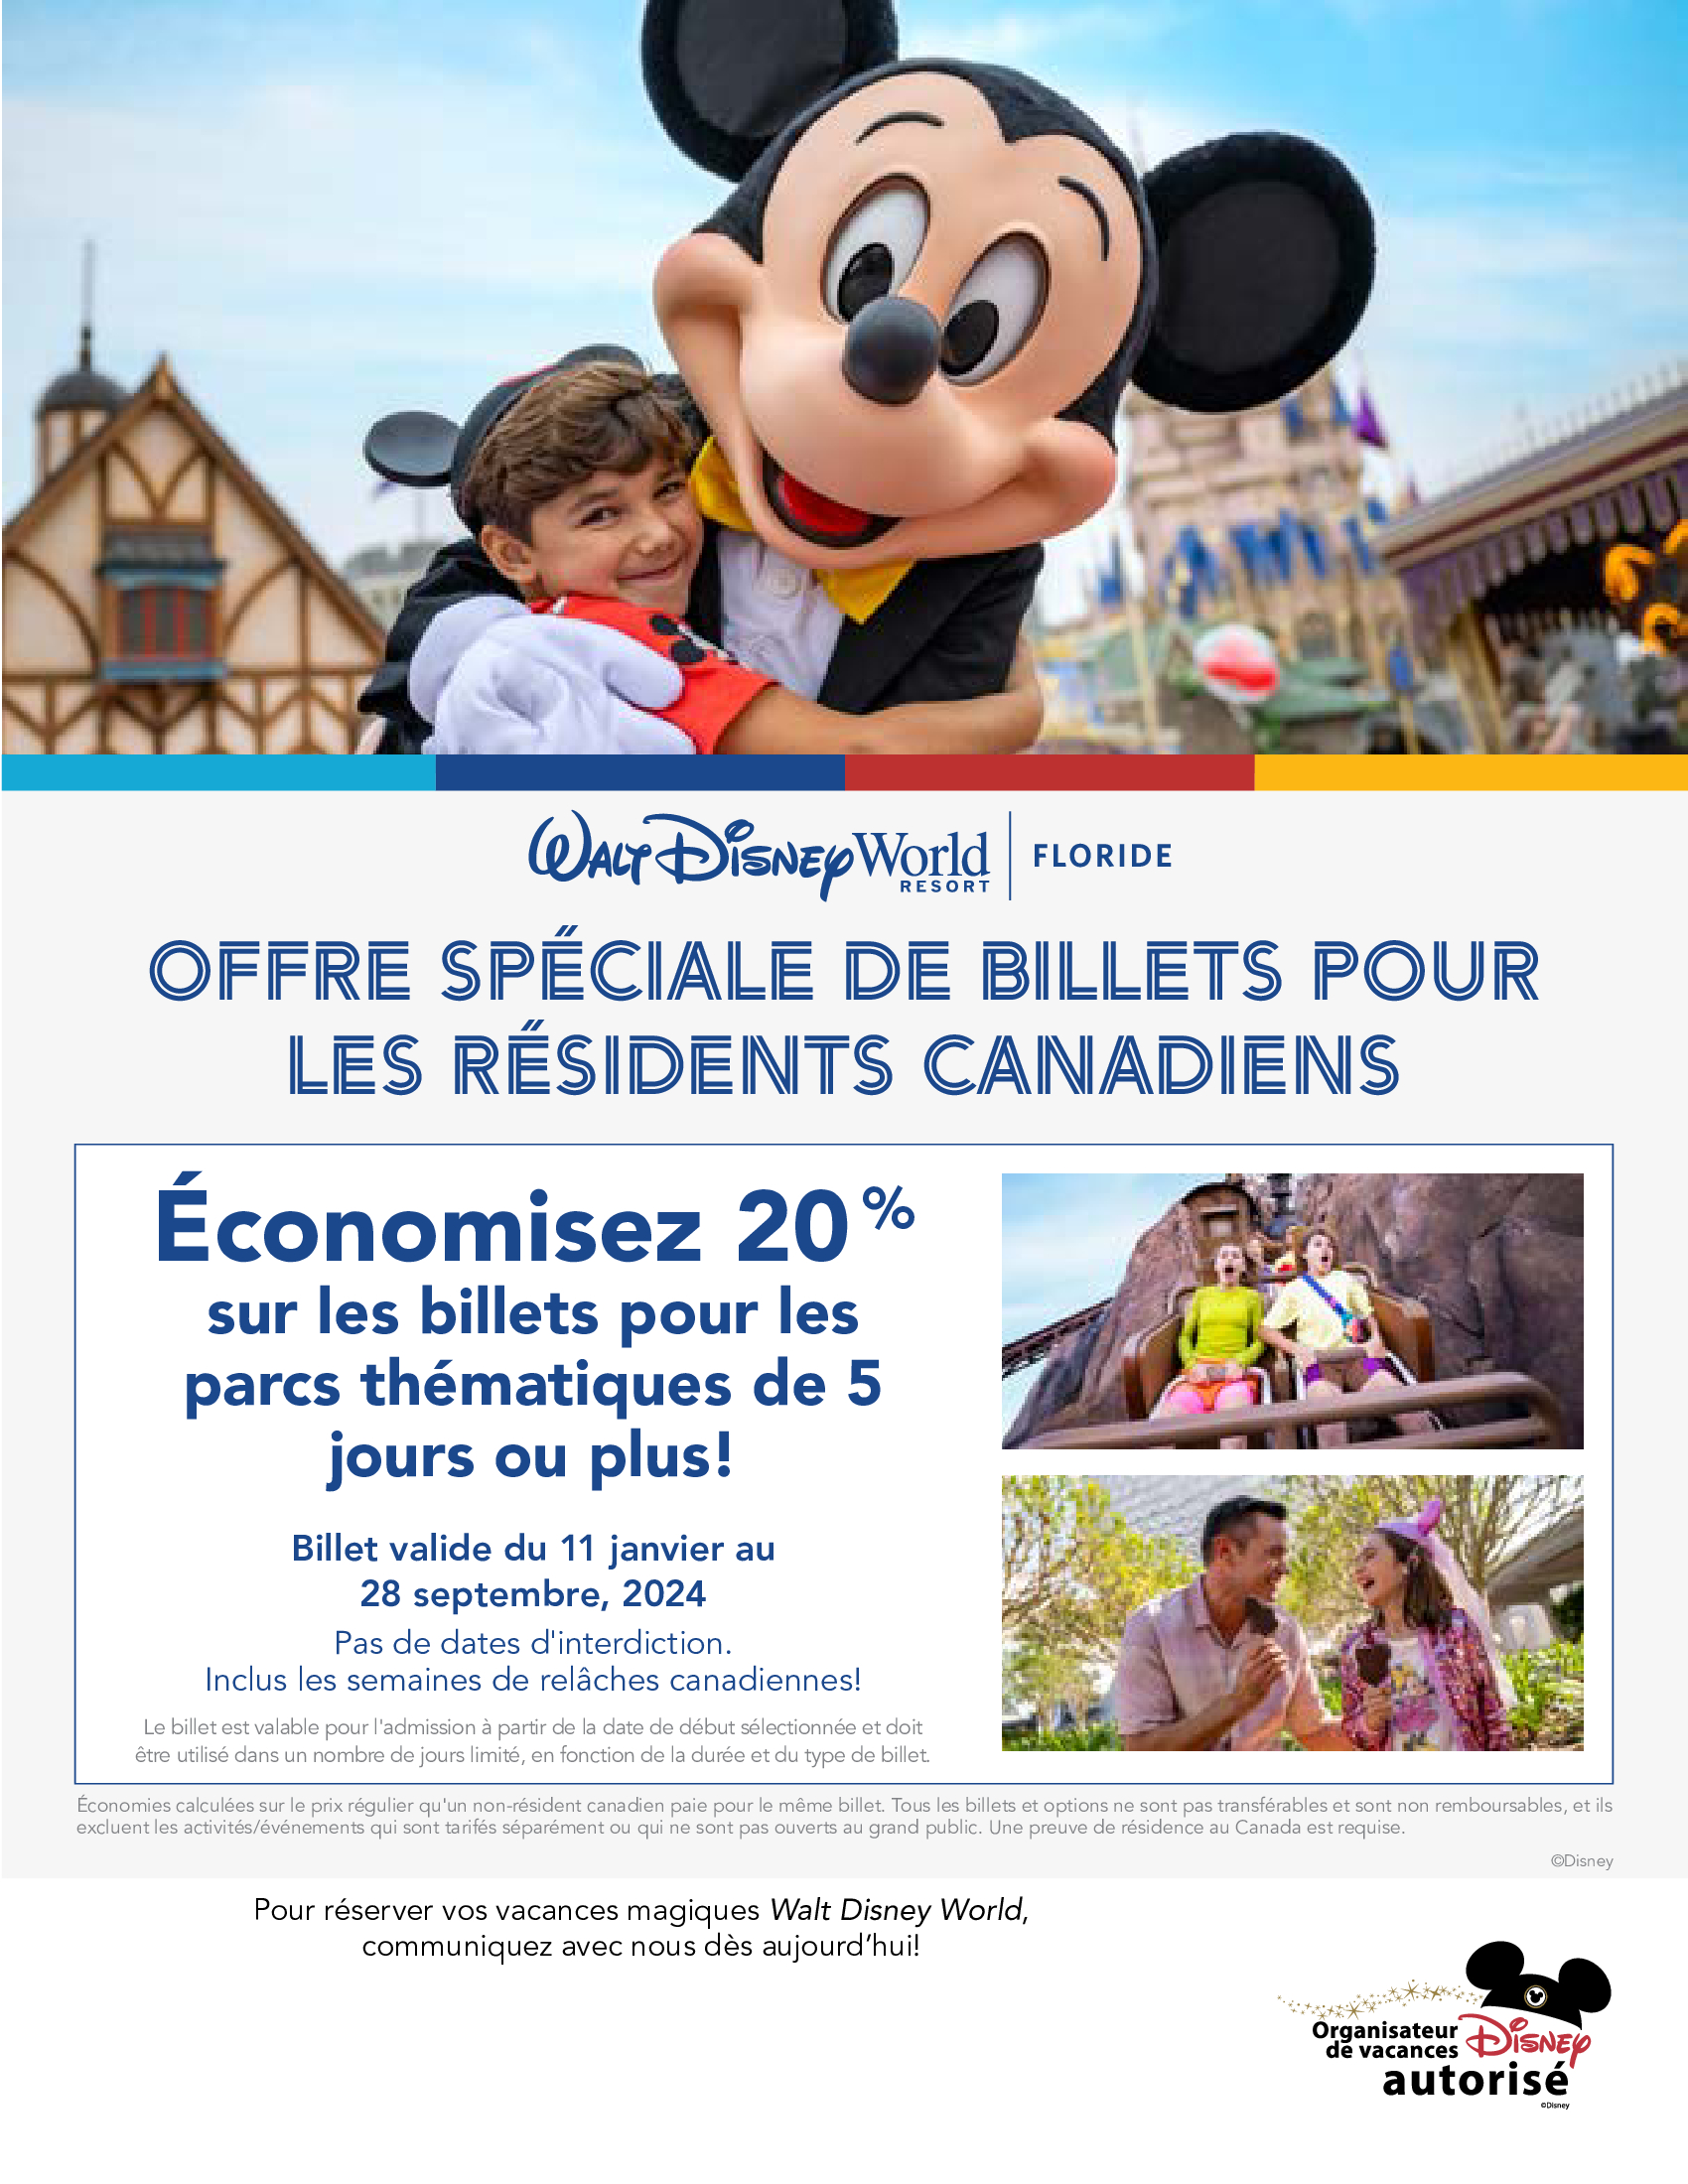 Walt Disney World Resort en Floride - Offre spéciale de billets pour les résidents canadiens - Économisez 20%